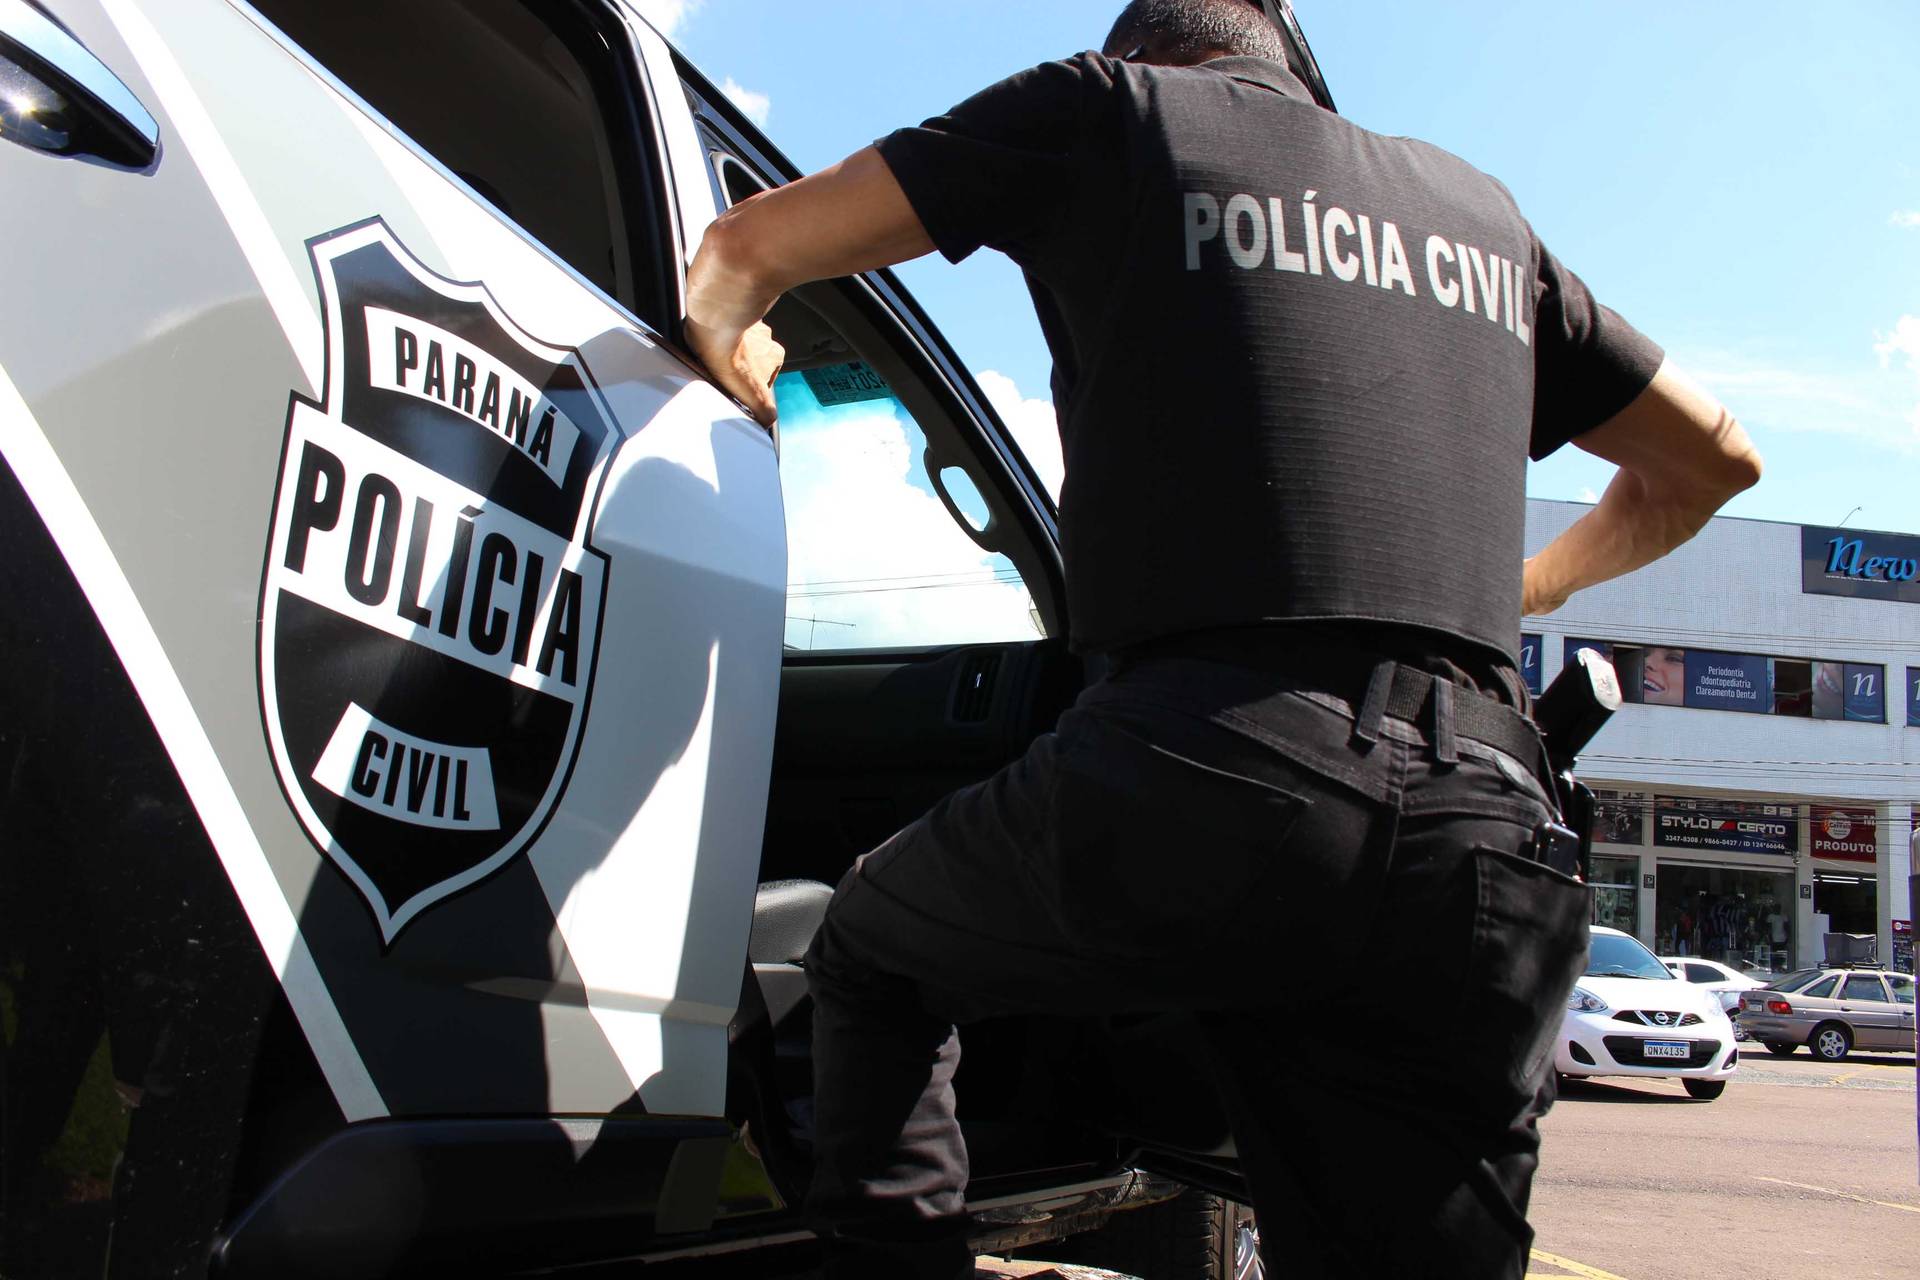  Polícia Civil do Paraná abre inscrições para 400 vagas